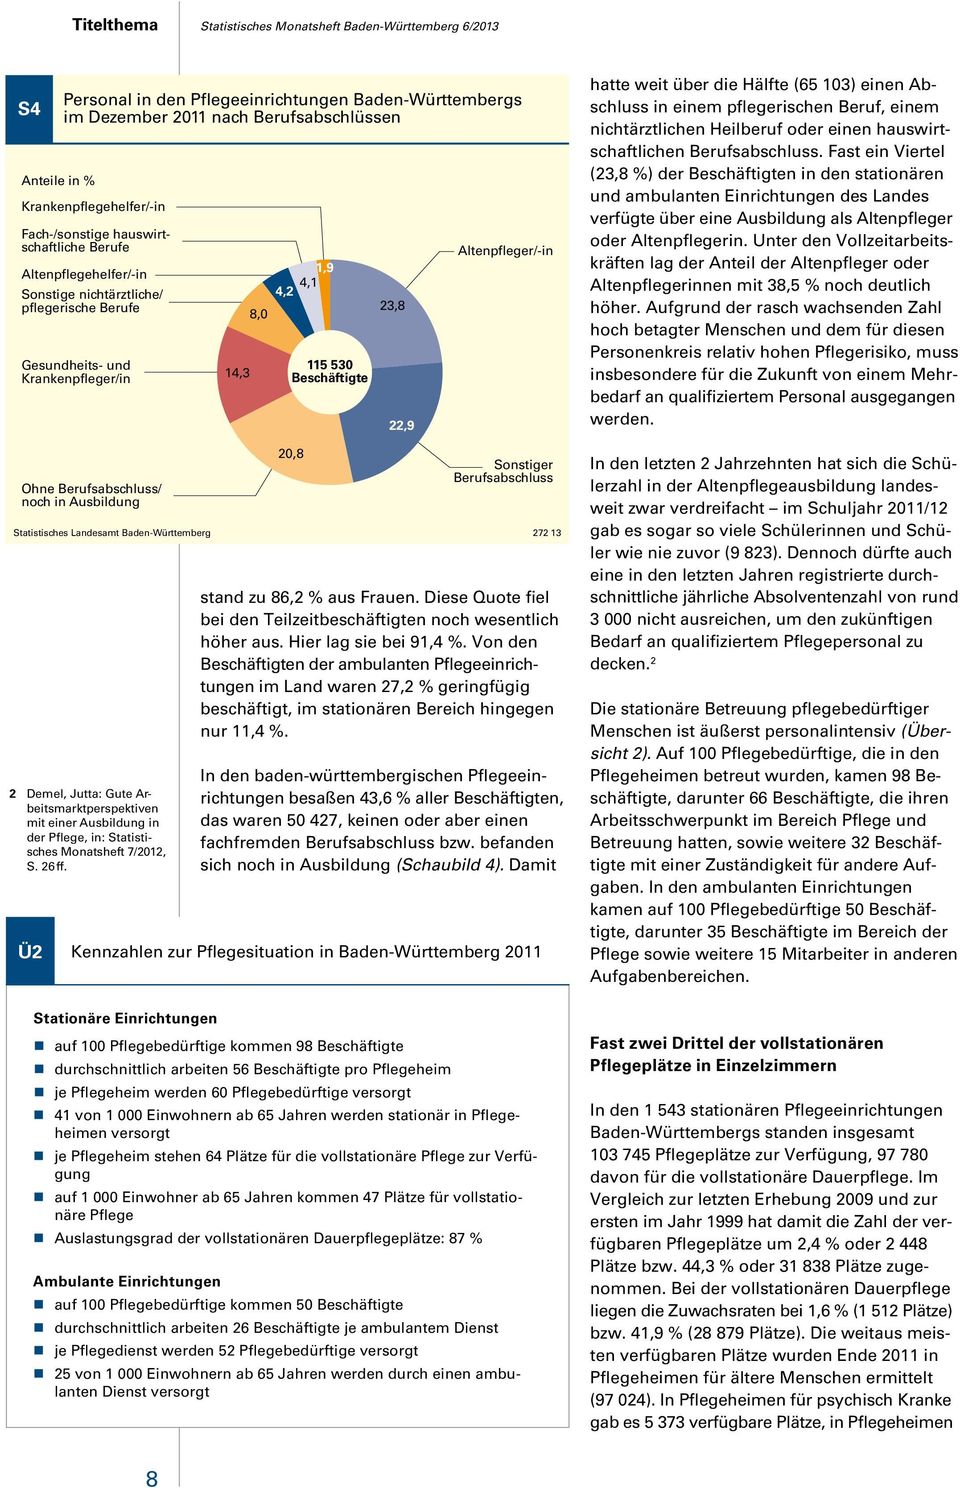 Baden-Württemberg 272 13 2 Demel, Jutta: Gute Arbeitsmarktperspektiven mit einer Ausbildung in der Pflege, in: Statistisches Monatsheft 7/2012, S. 26 ff.